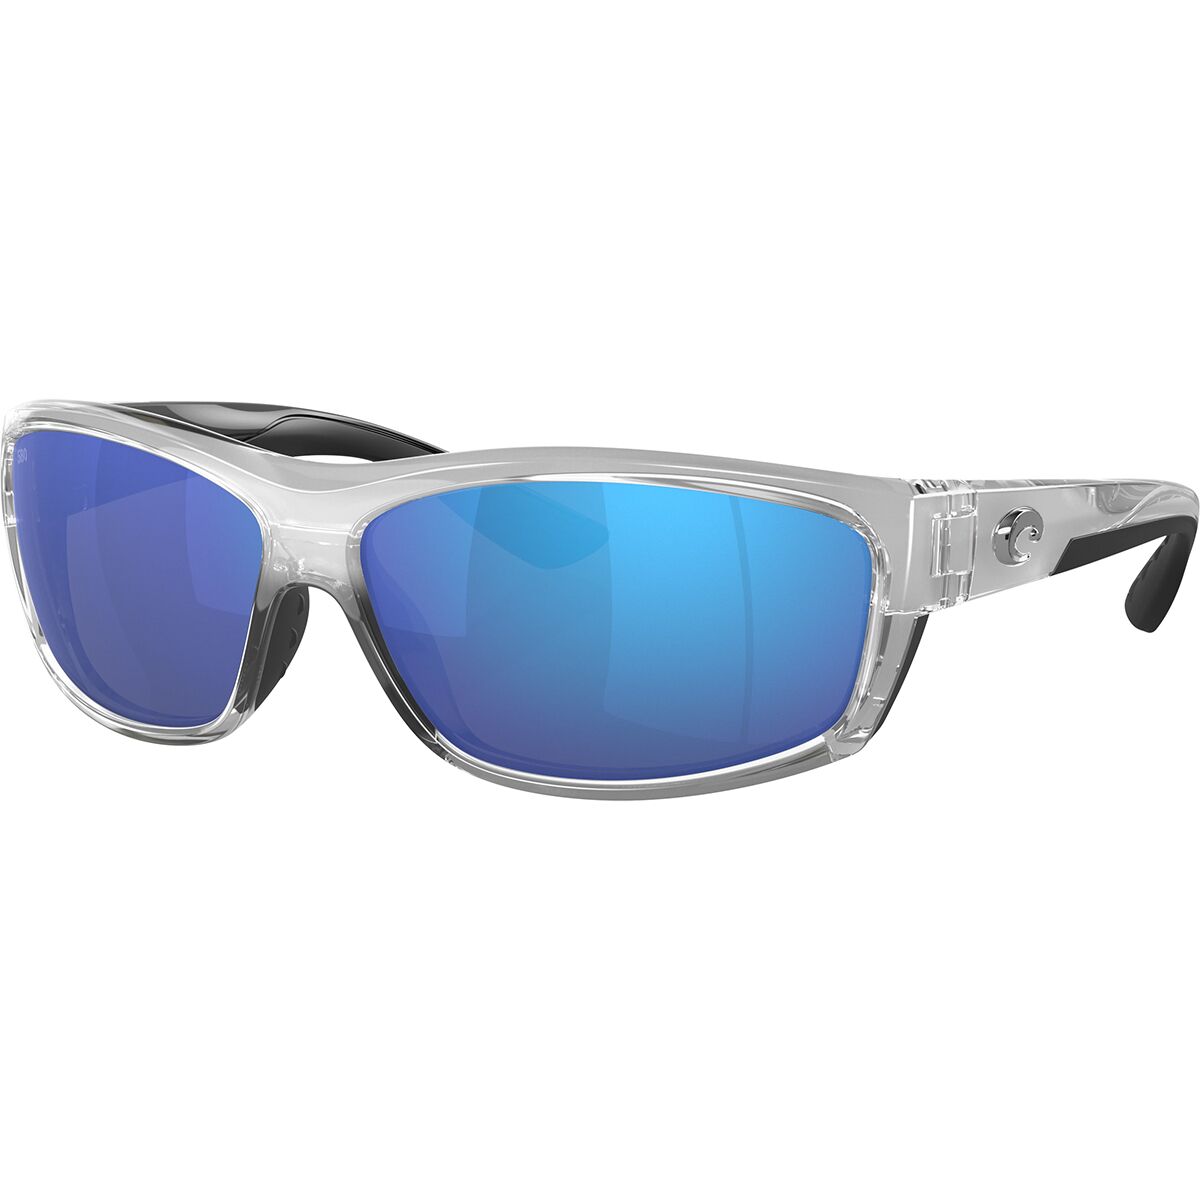 Pre-owned Costa Del Mar Costa Saltbreak 580g Polarized Sunglasses In Silver Blue Mirror